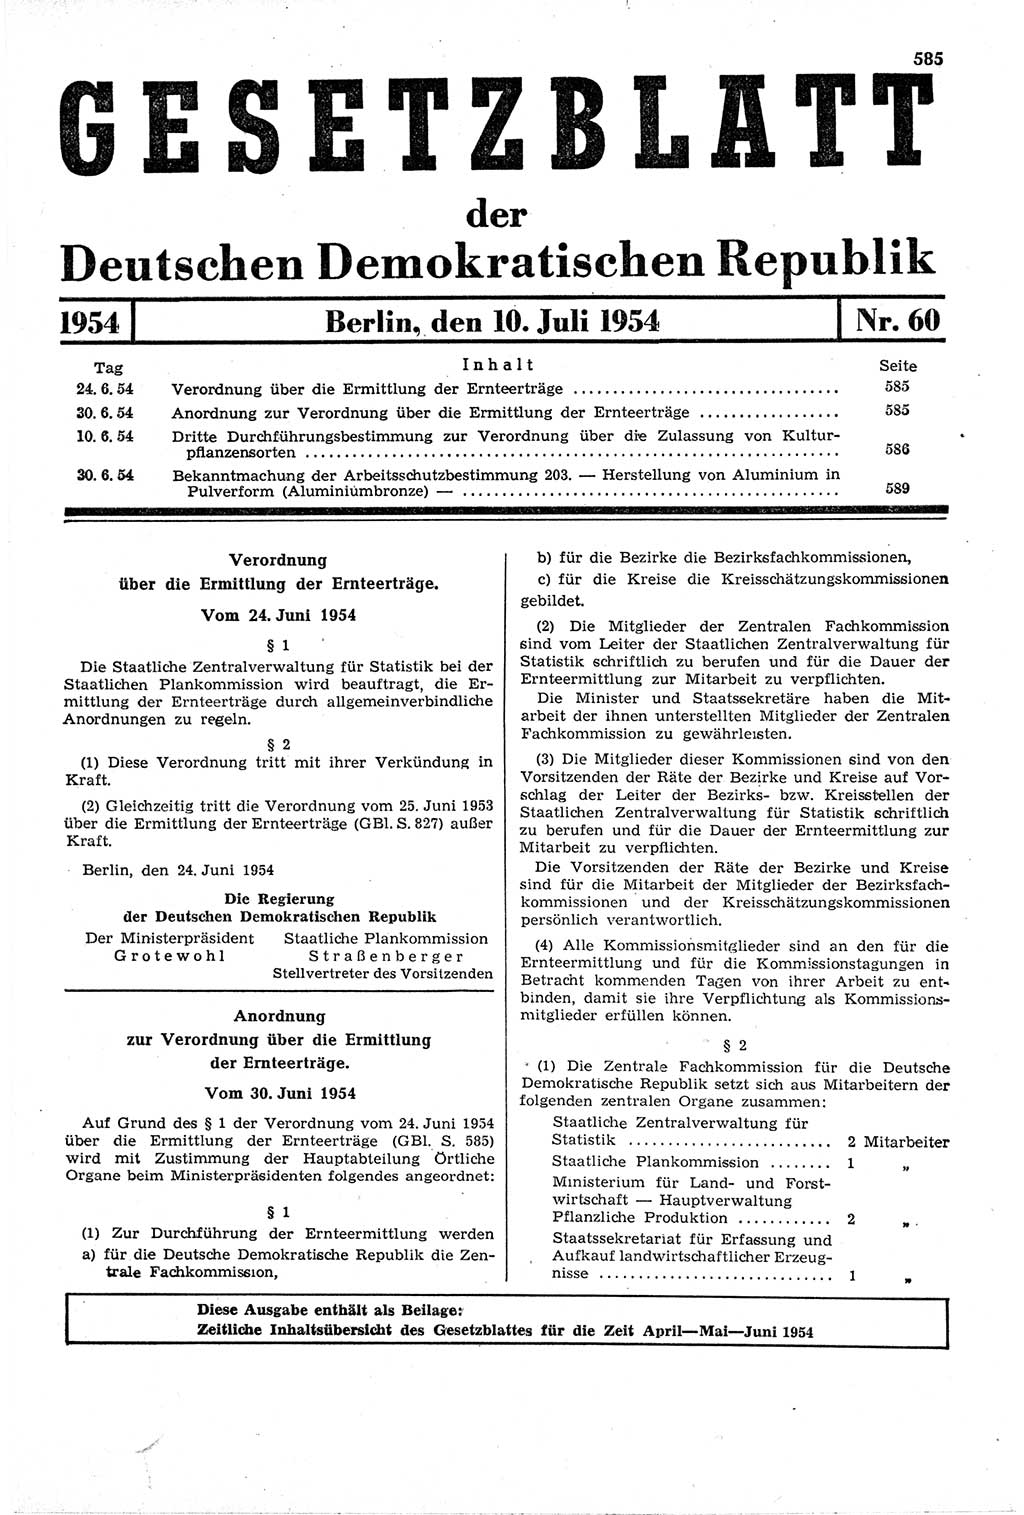 Gesetzblatt (GBl.) der Deutschen Demokratischen Republik (DDR) 1954, Seite 585 (GBl. DDR 1954, S. 585)